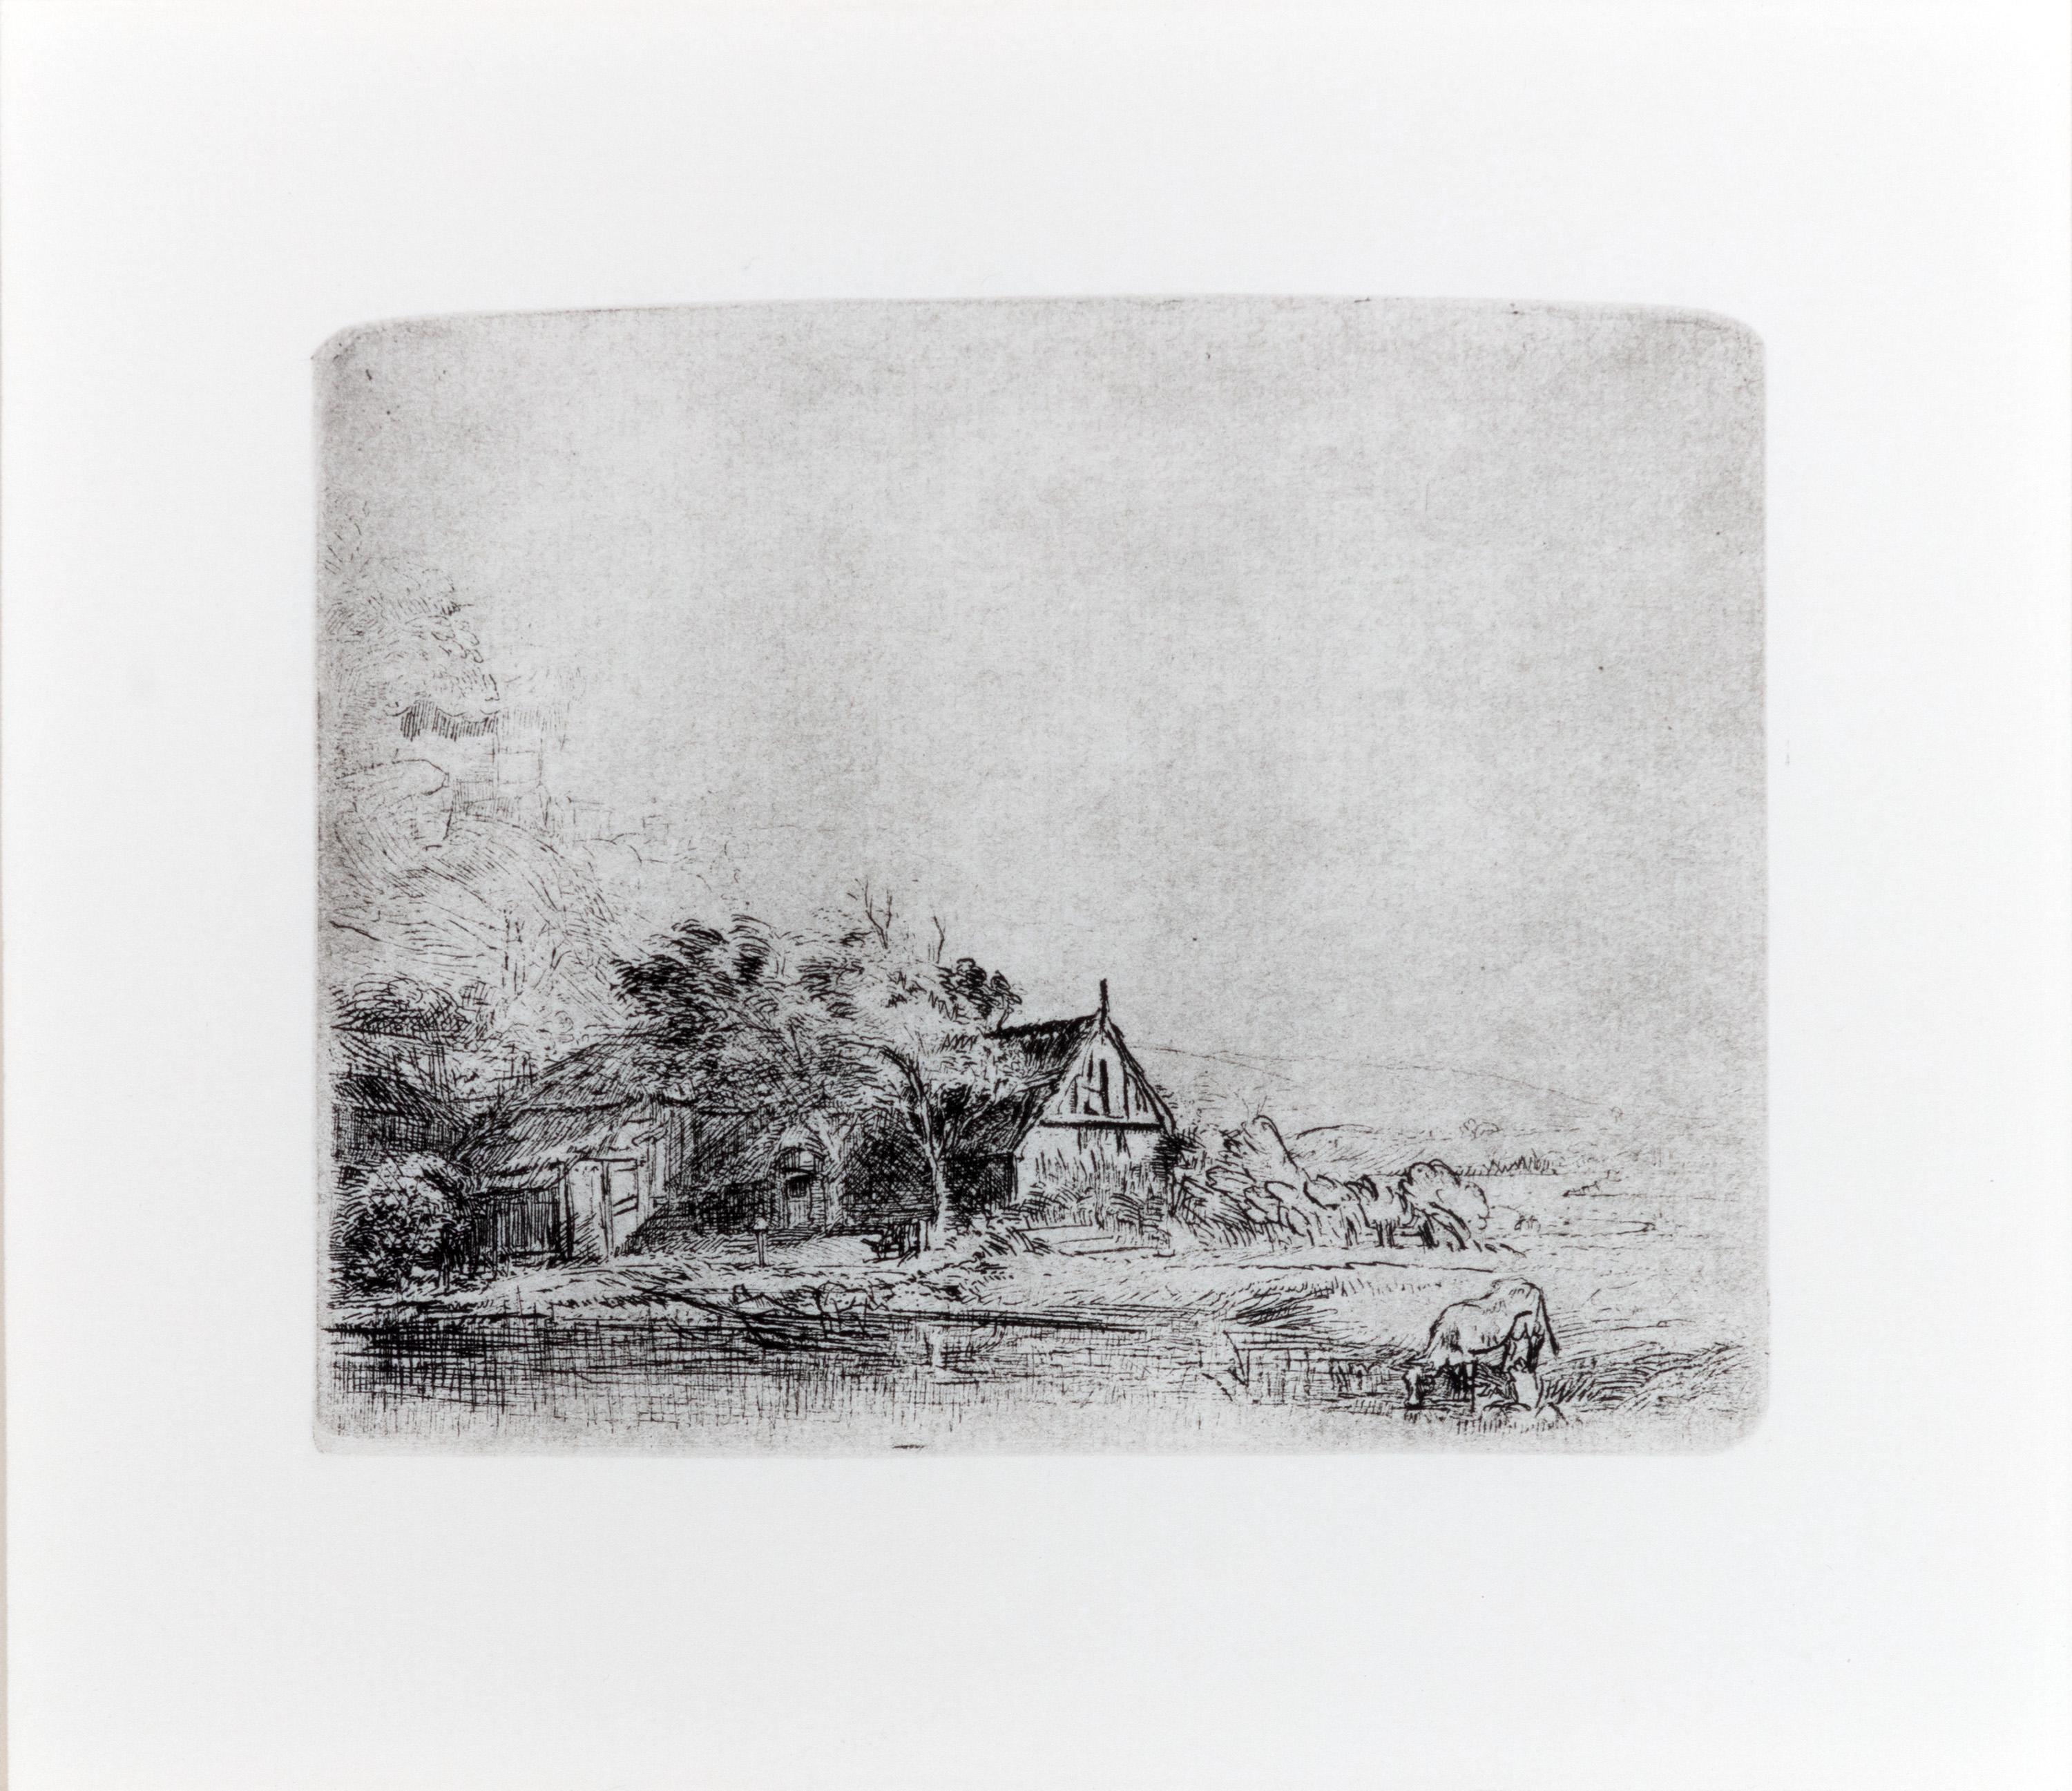 Landscape with a Cow - Print by Rembrandt van Rijn